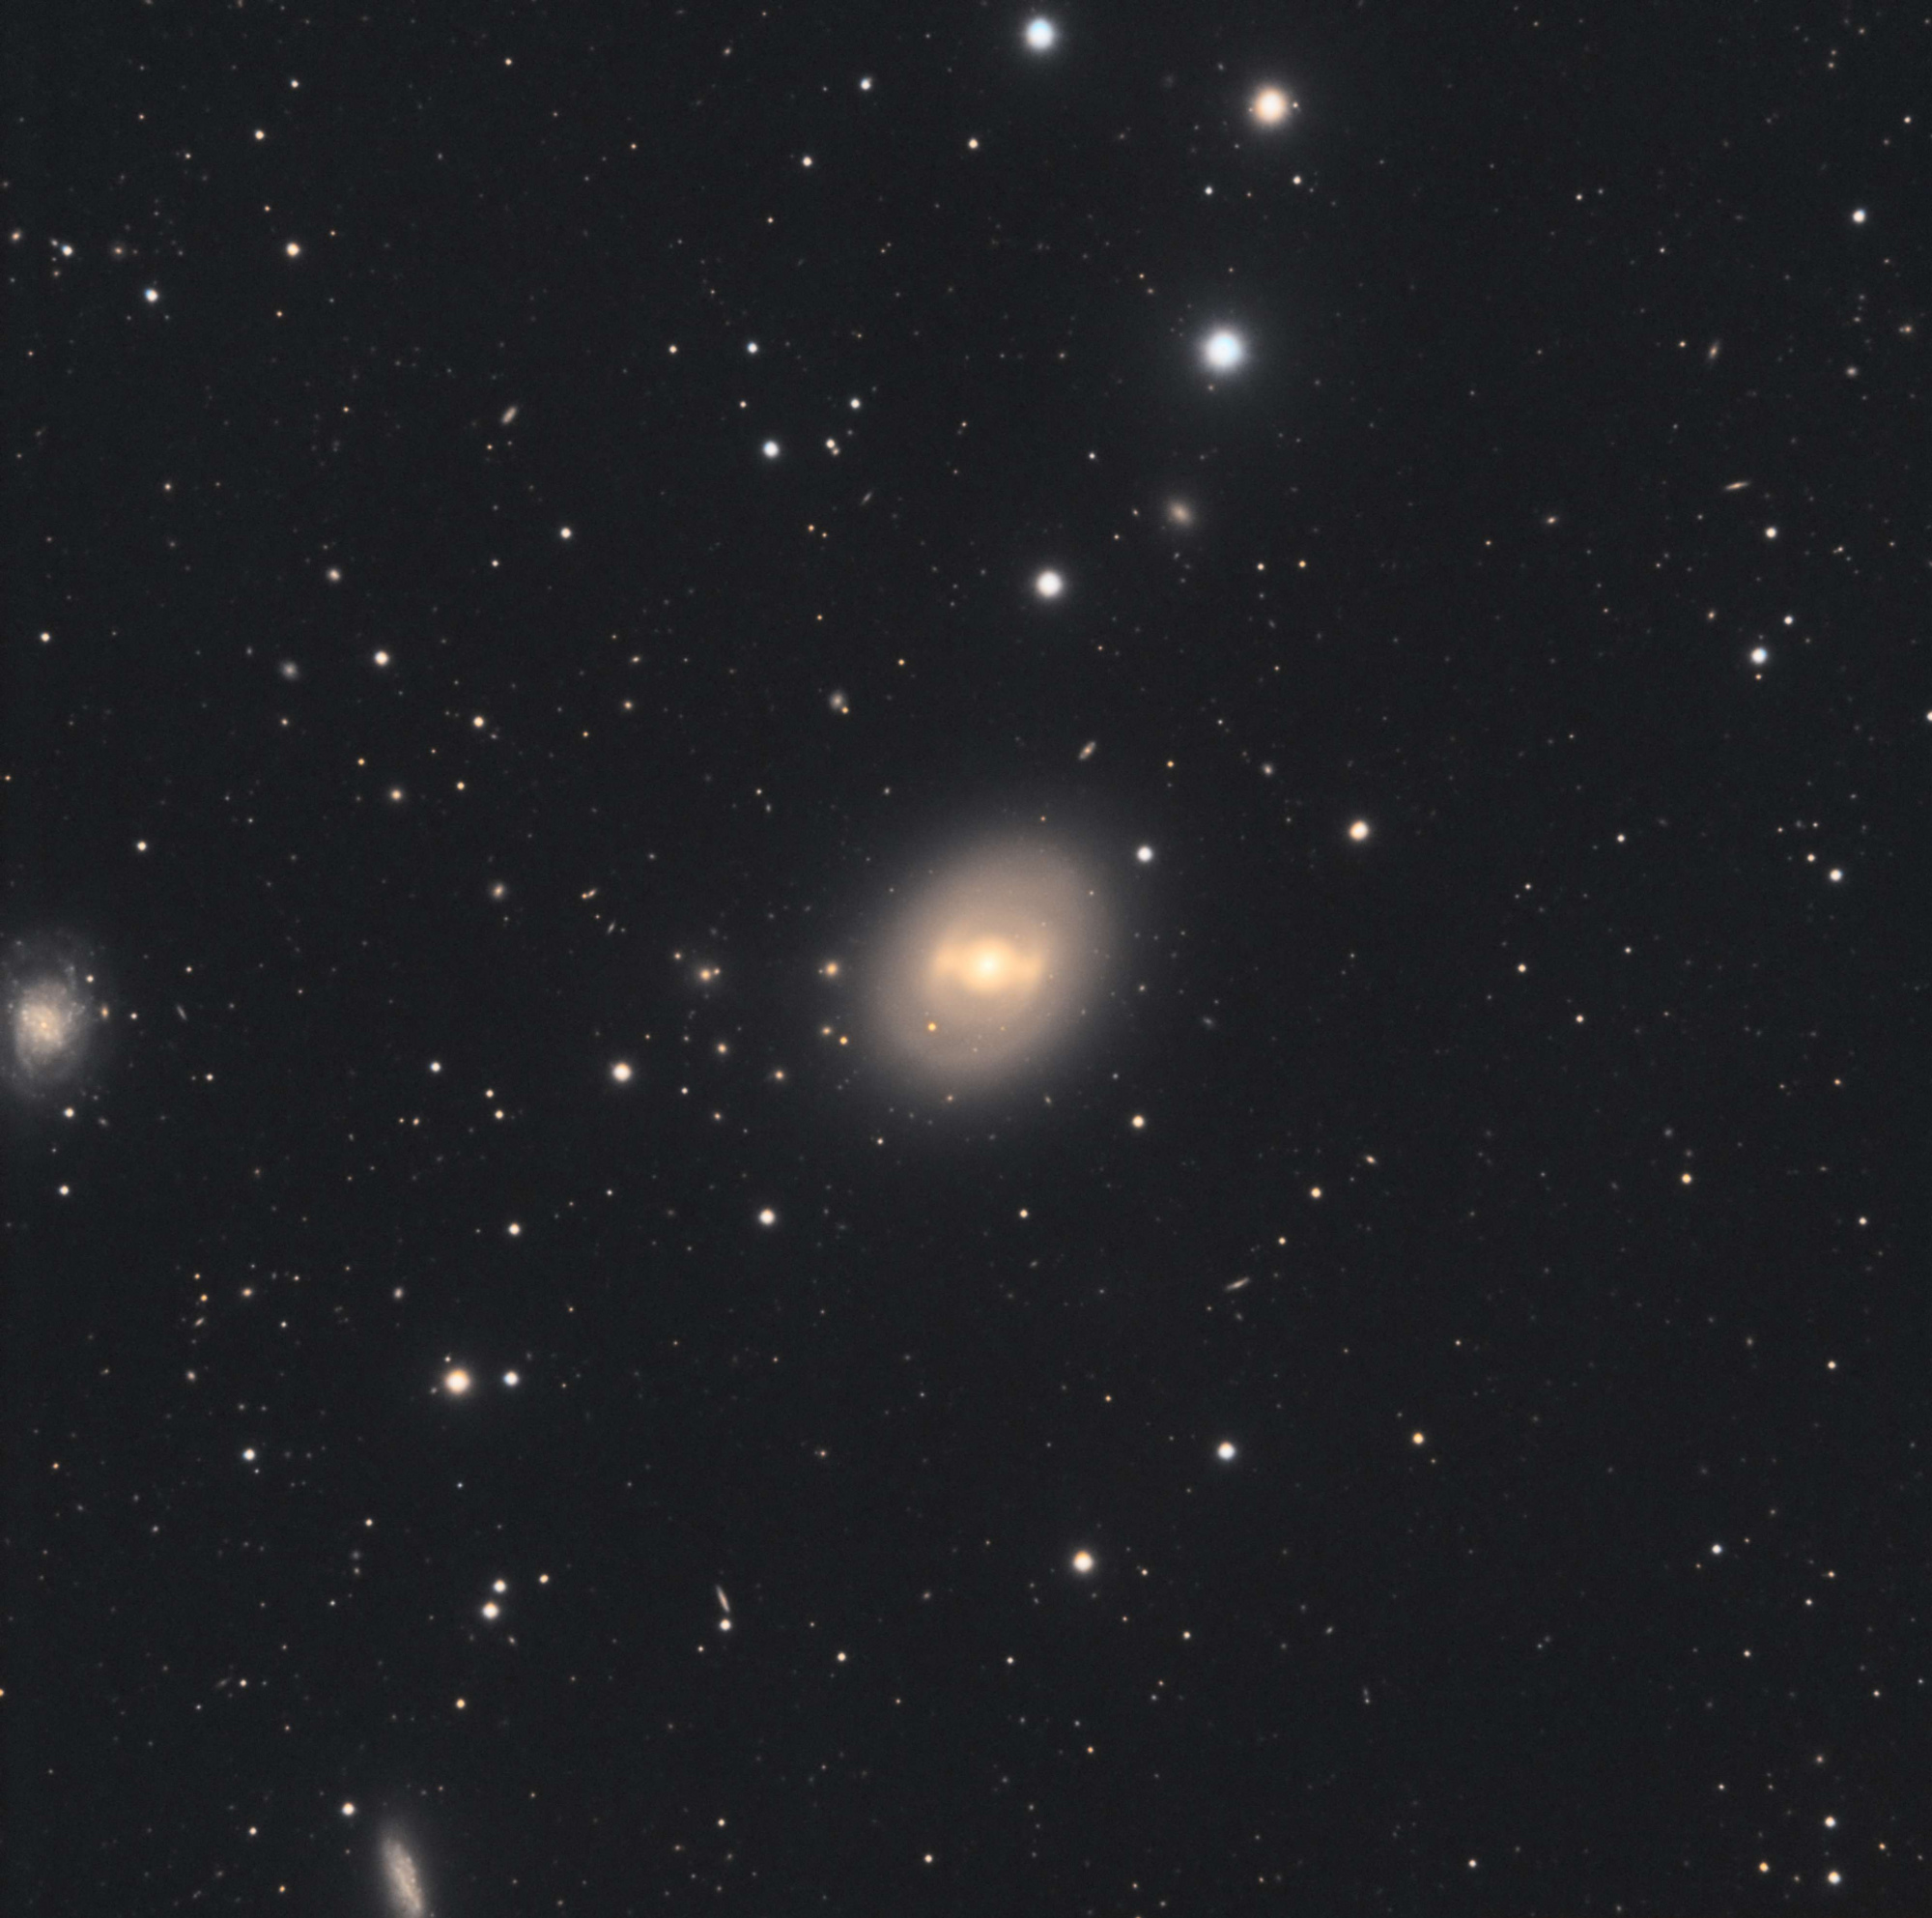 5c48457eb7bad_NGC936.thumb.jpg.d05a10182b25c8c80f324ecf21fe5e42.jpg